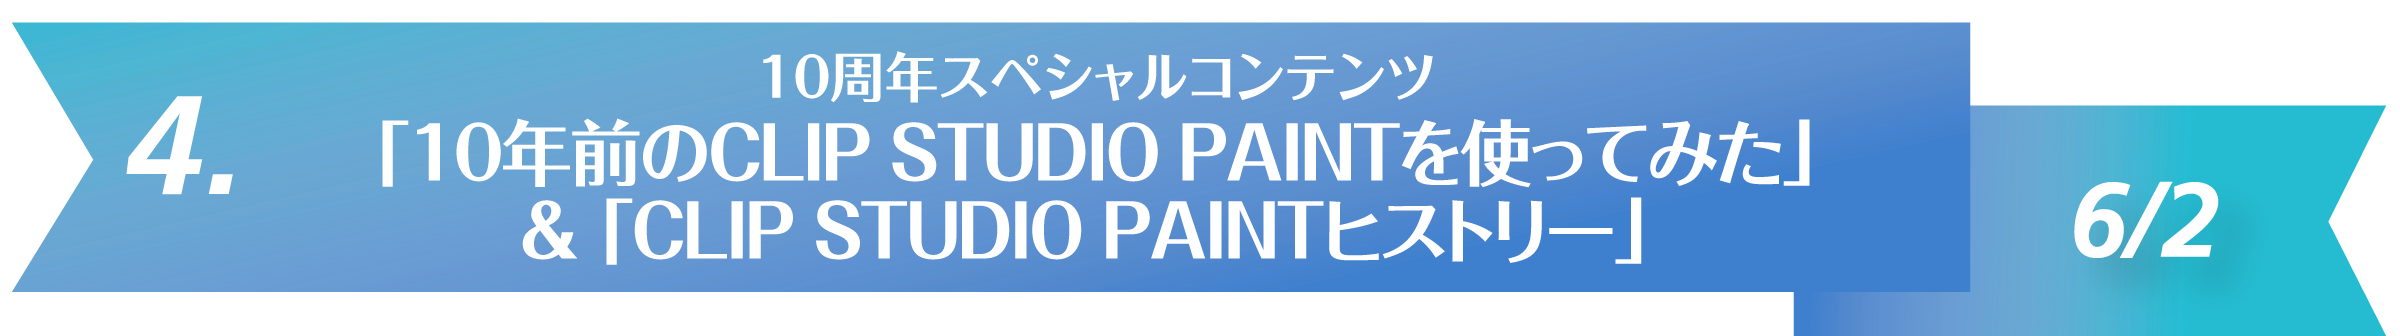 4. 10周年スペシャルコンテンツ 「10年前のCLIP STUDIO PAINTを使ってみた」
& 「CLIP STUDIO PAINTヒストリー」 6/2